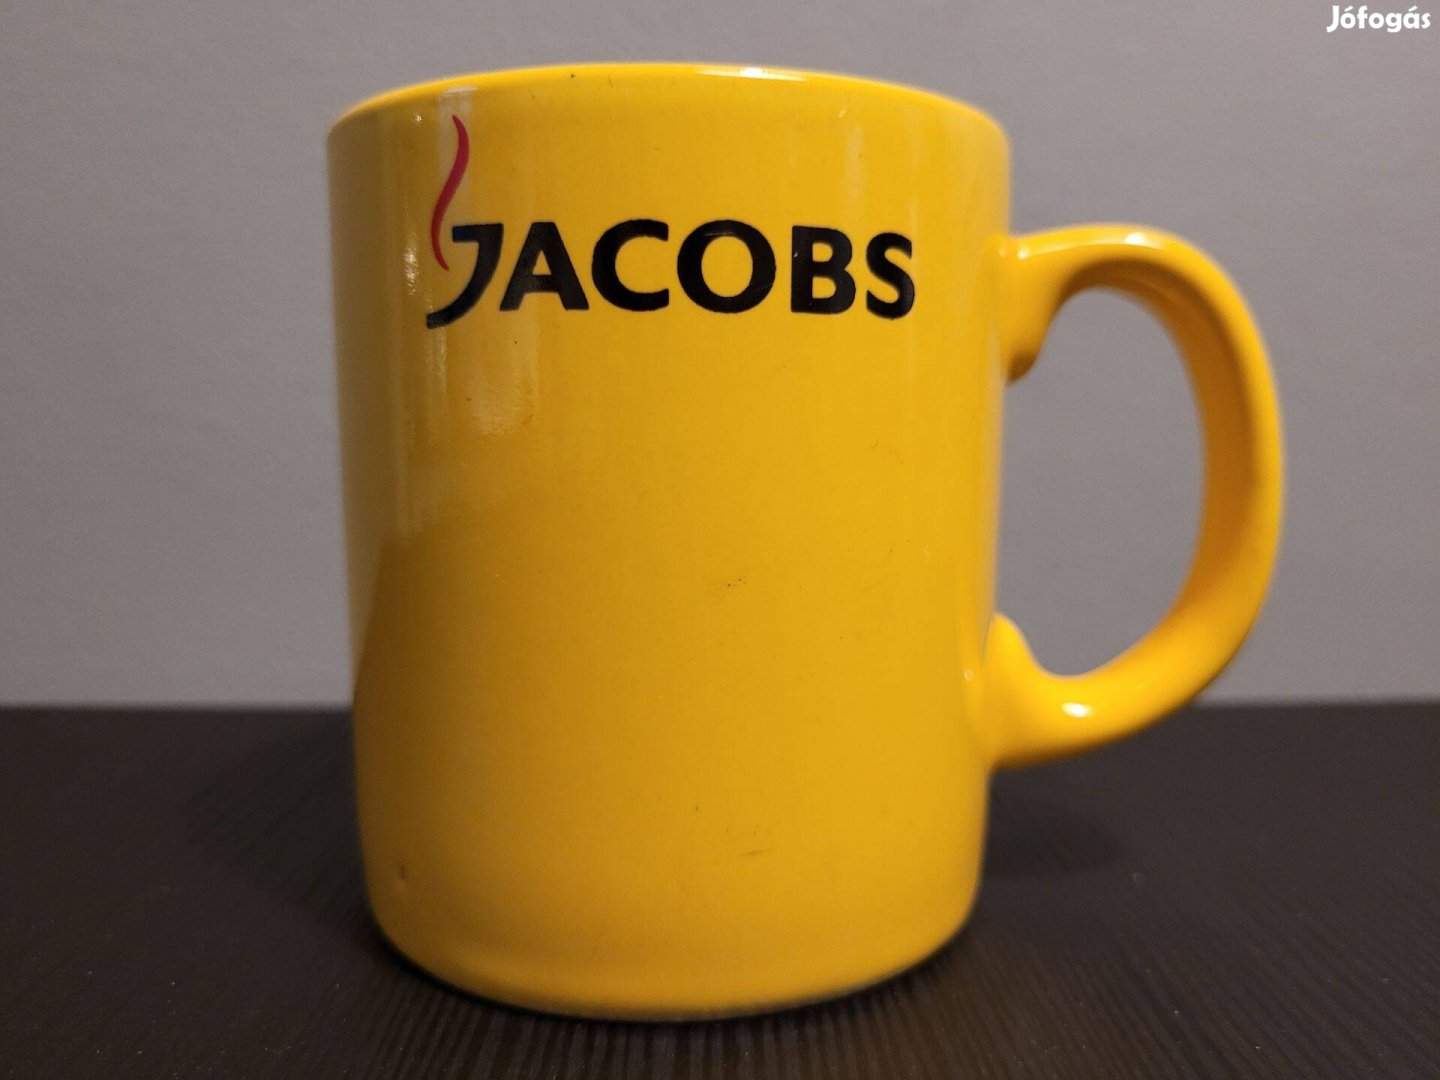 Napsárga Jacobs reklámbögre - gyűjtőknek